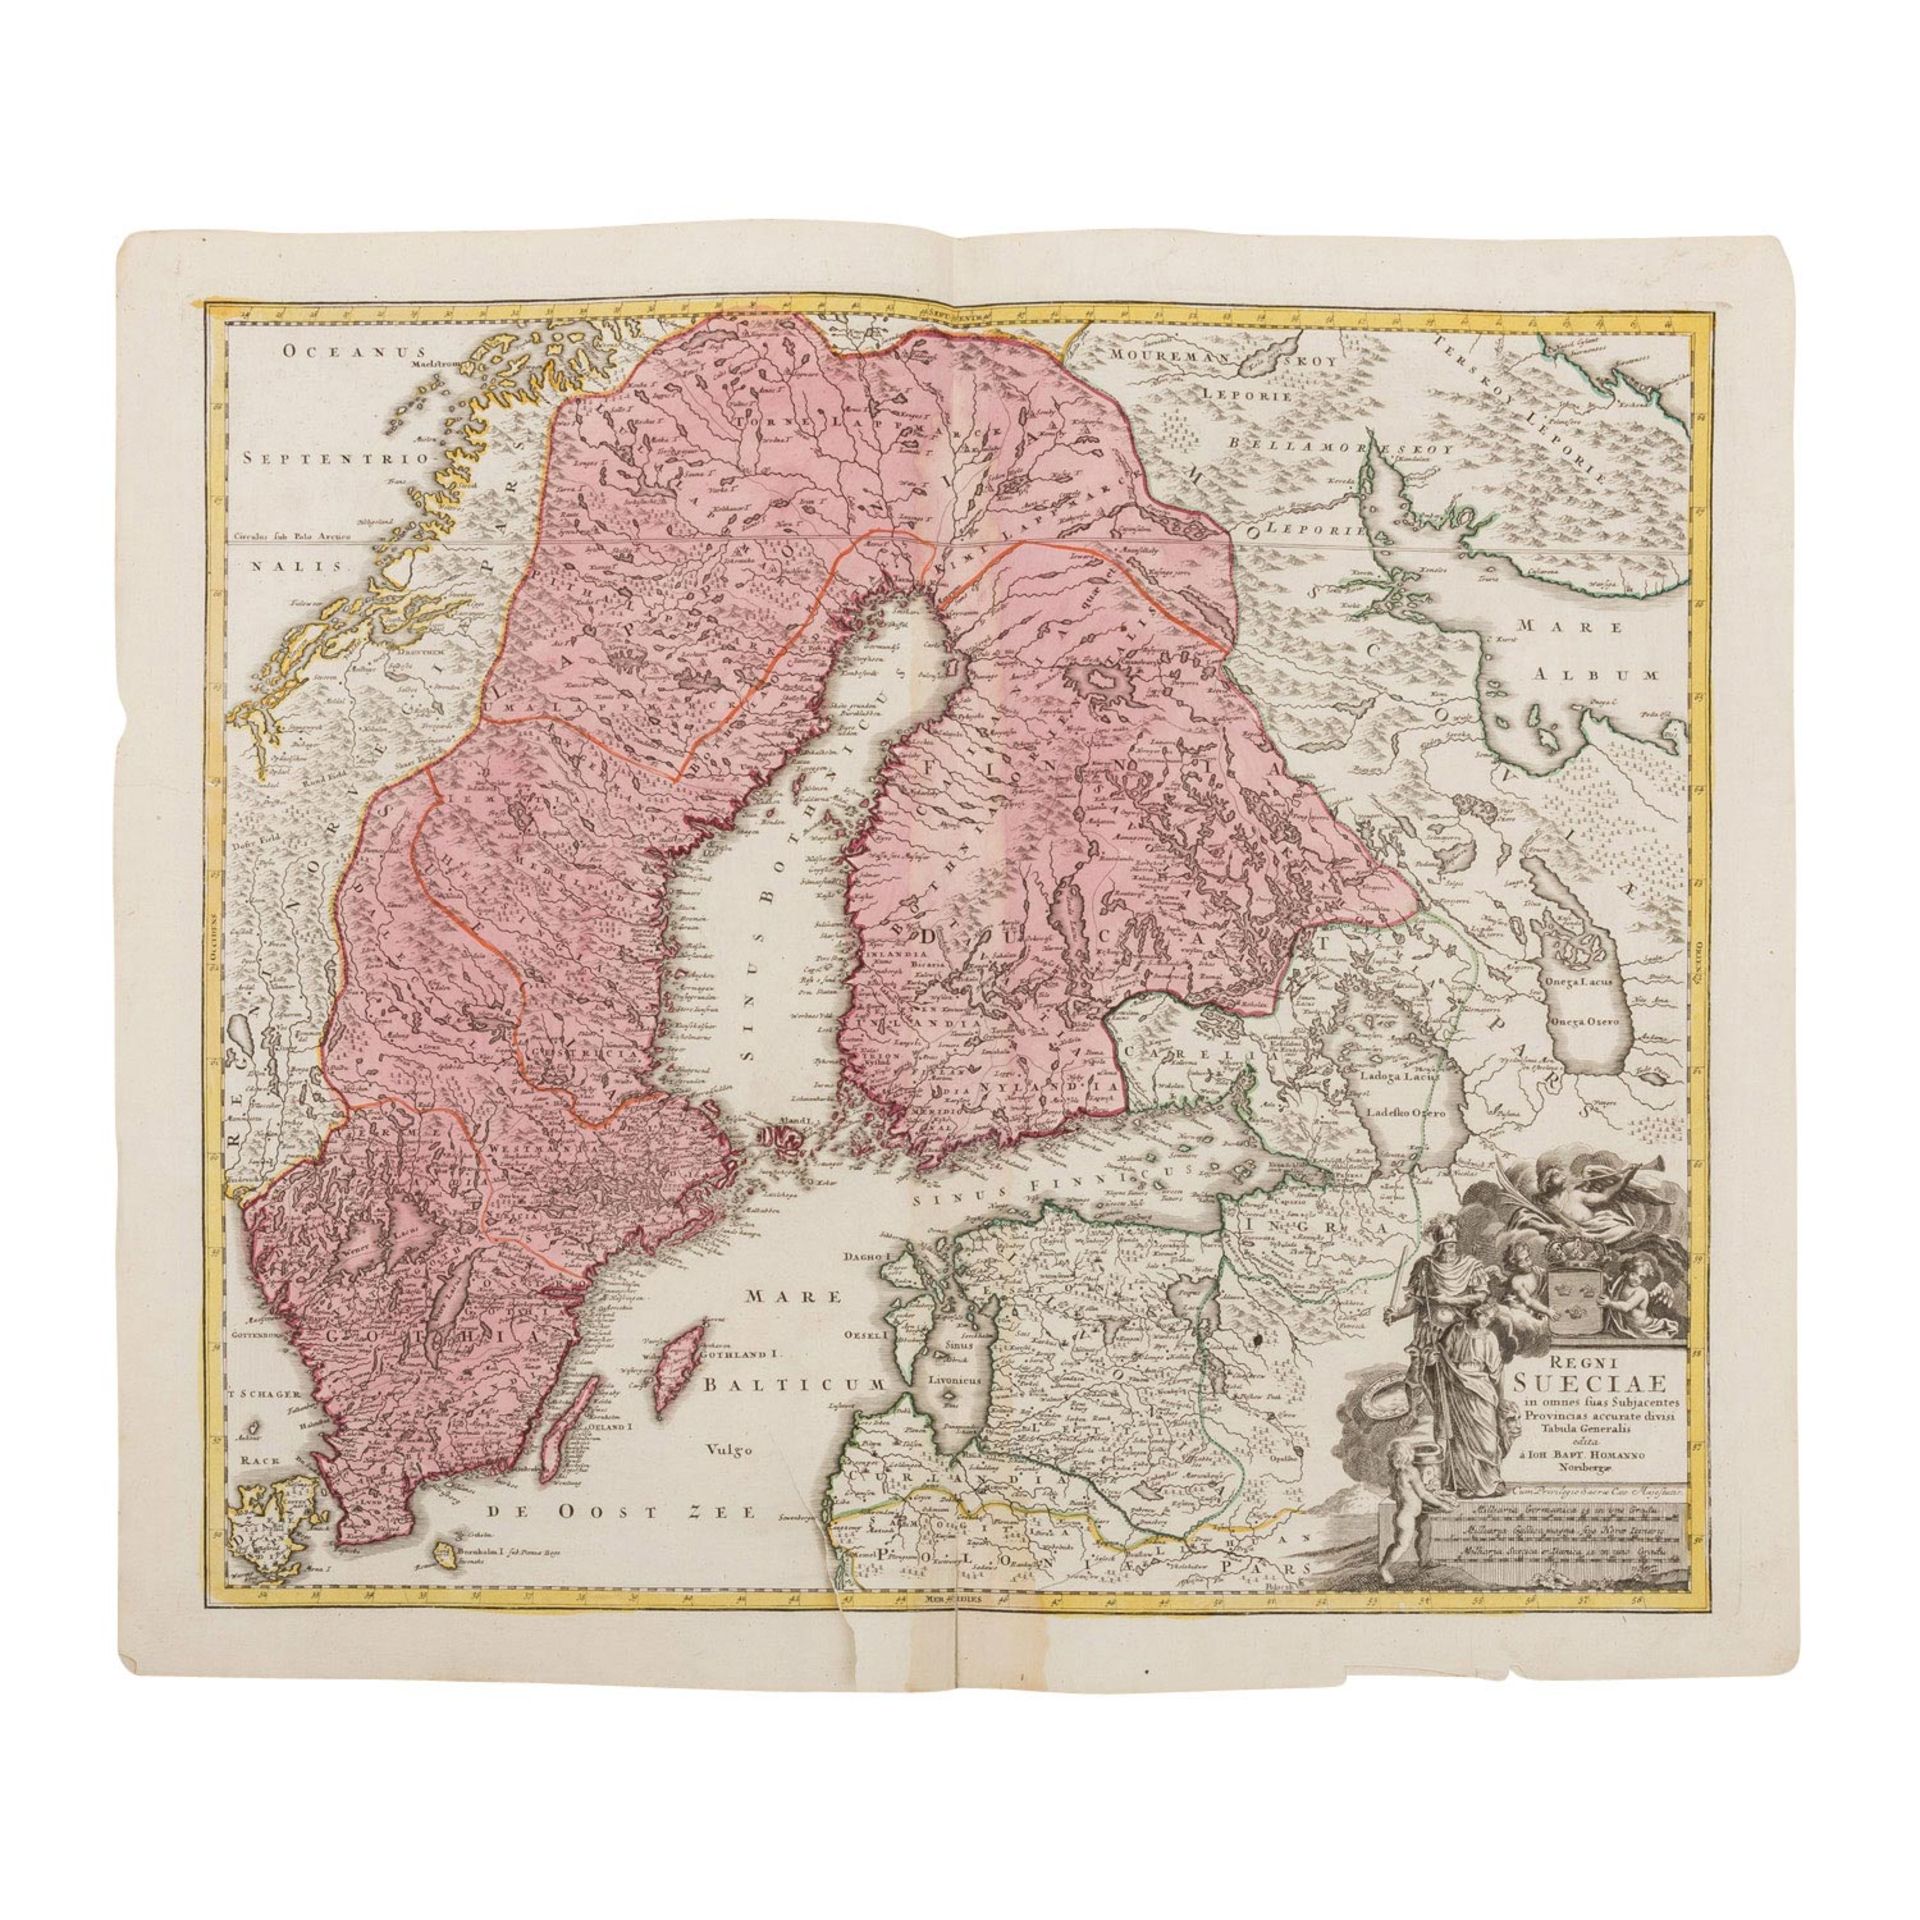 Skandinavien, Norddeutschand, Polen, 7 handkolorierte Kupferstichkarten, 18./19.Jh. - - Image 2 of 7